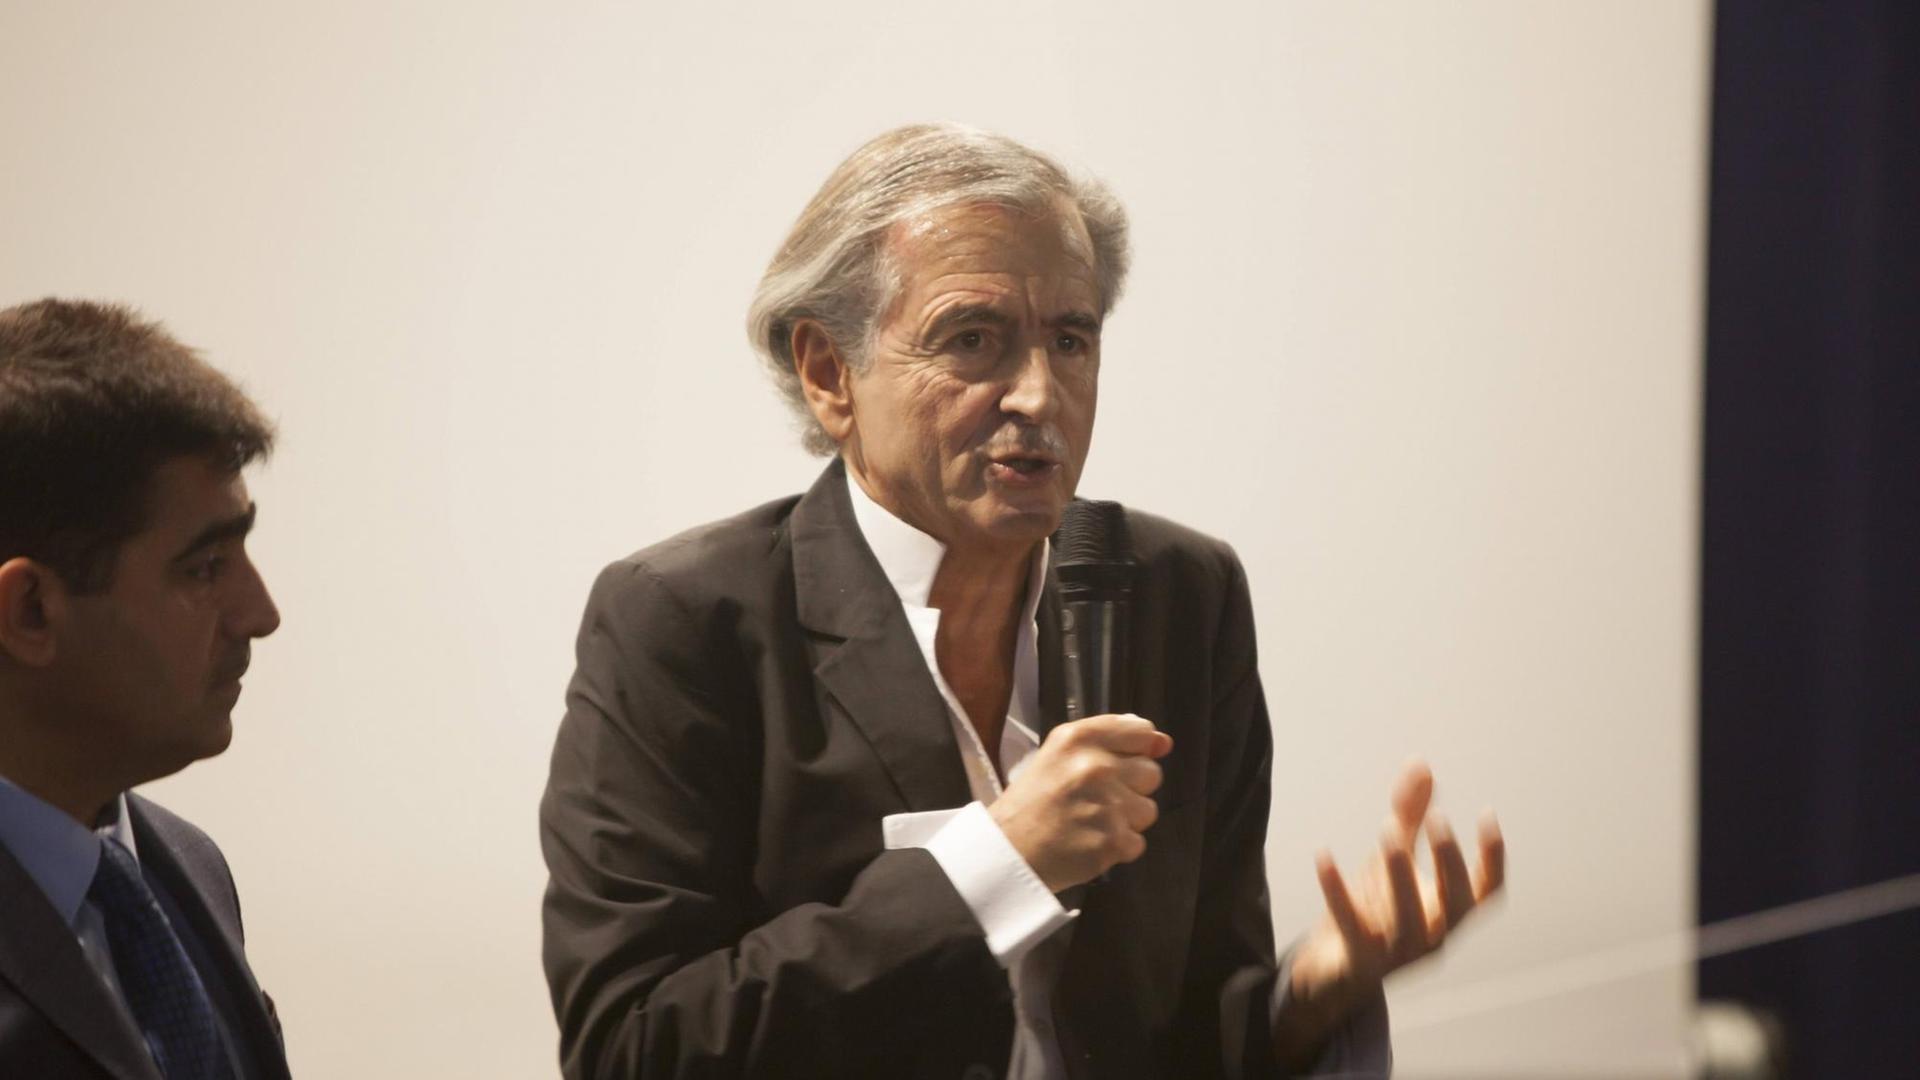 der Philosoph Bernard-Herni Levy steht auf einem Podium und spricht in ein Mikrofon, er gestikuliert mit seiner linken Hand.